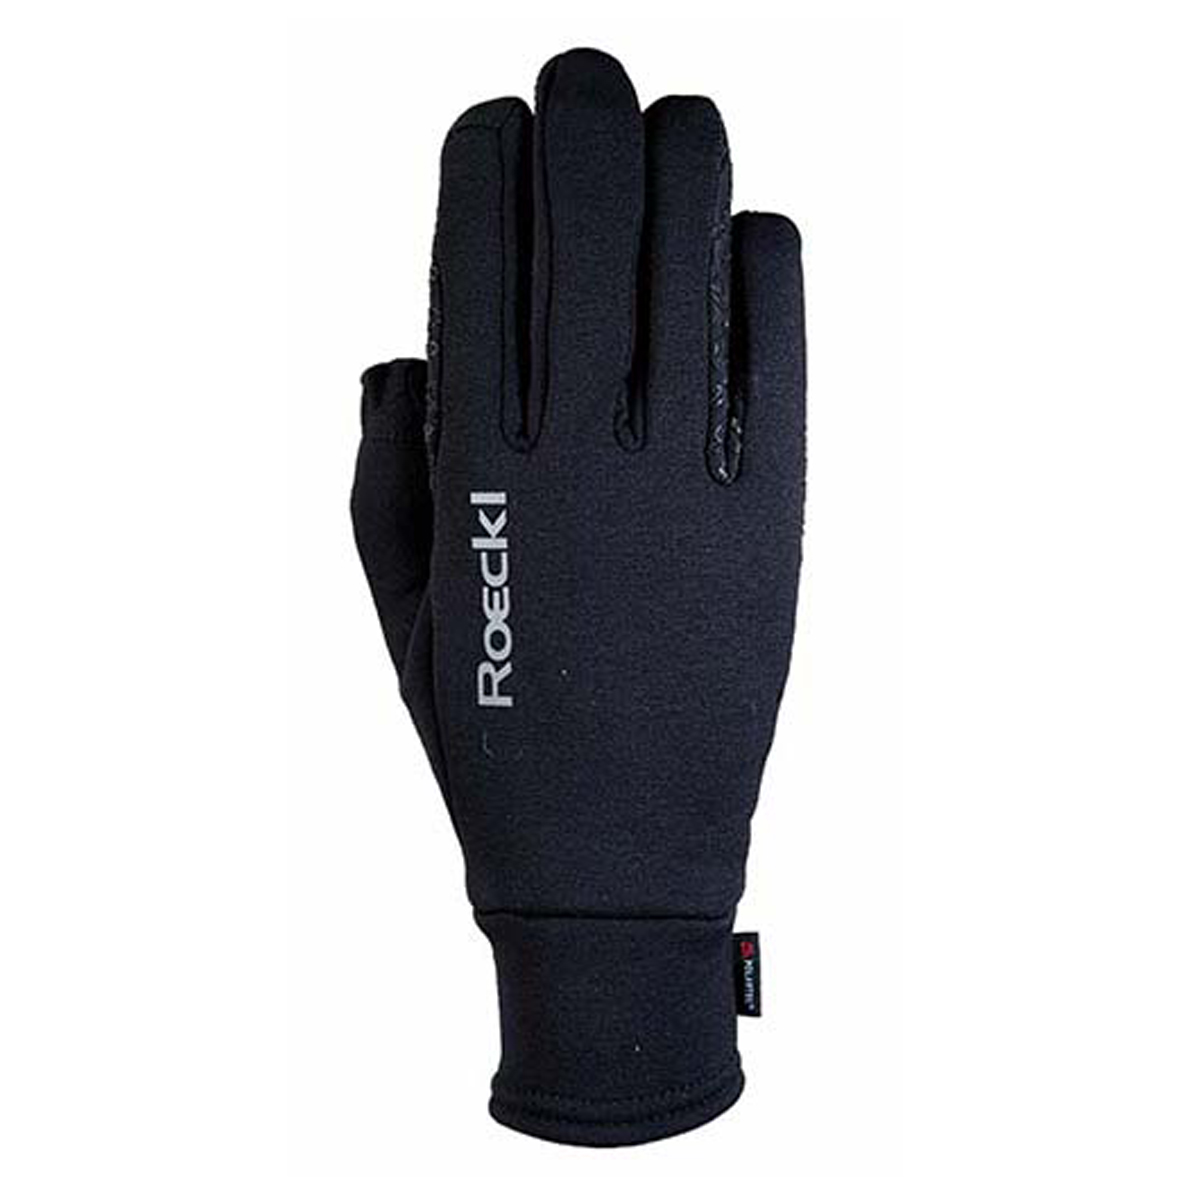 Handschoenen Roeckl Weldon Polartec, 7,5 in zwart